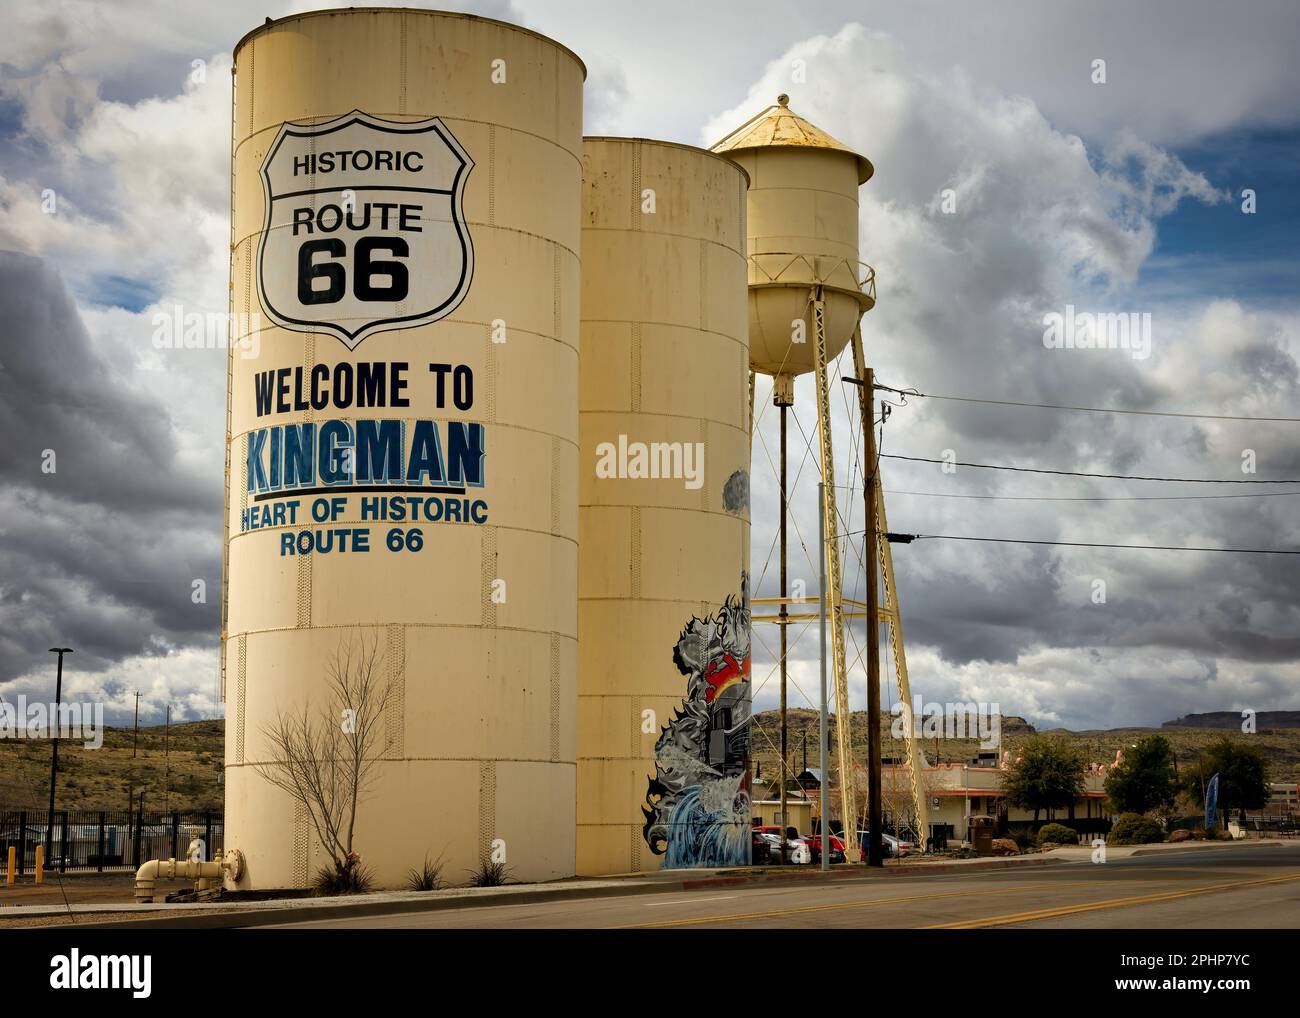 Hinter einem Wassertank, der Besucher auf der historischen Route 66 nach Kingman, Arizona, willkommen heißt, gibt es Sturmwolken. Stockfoto